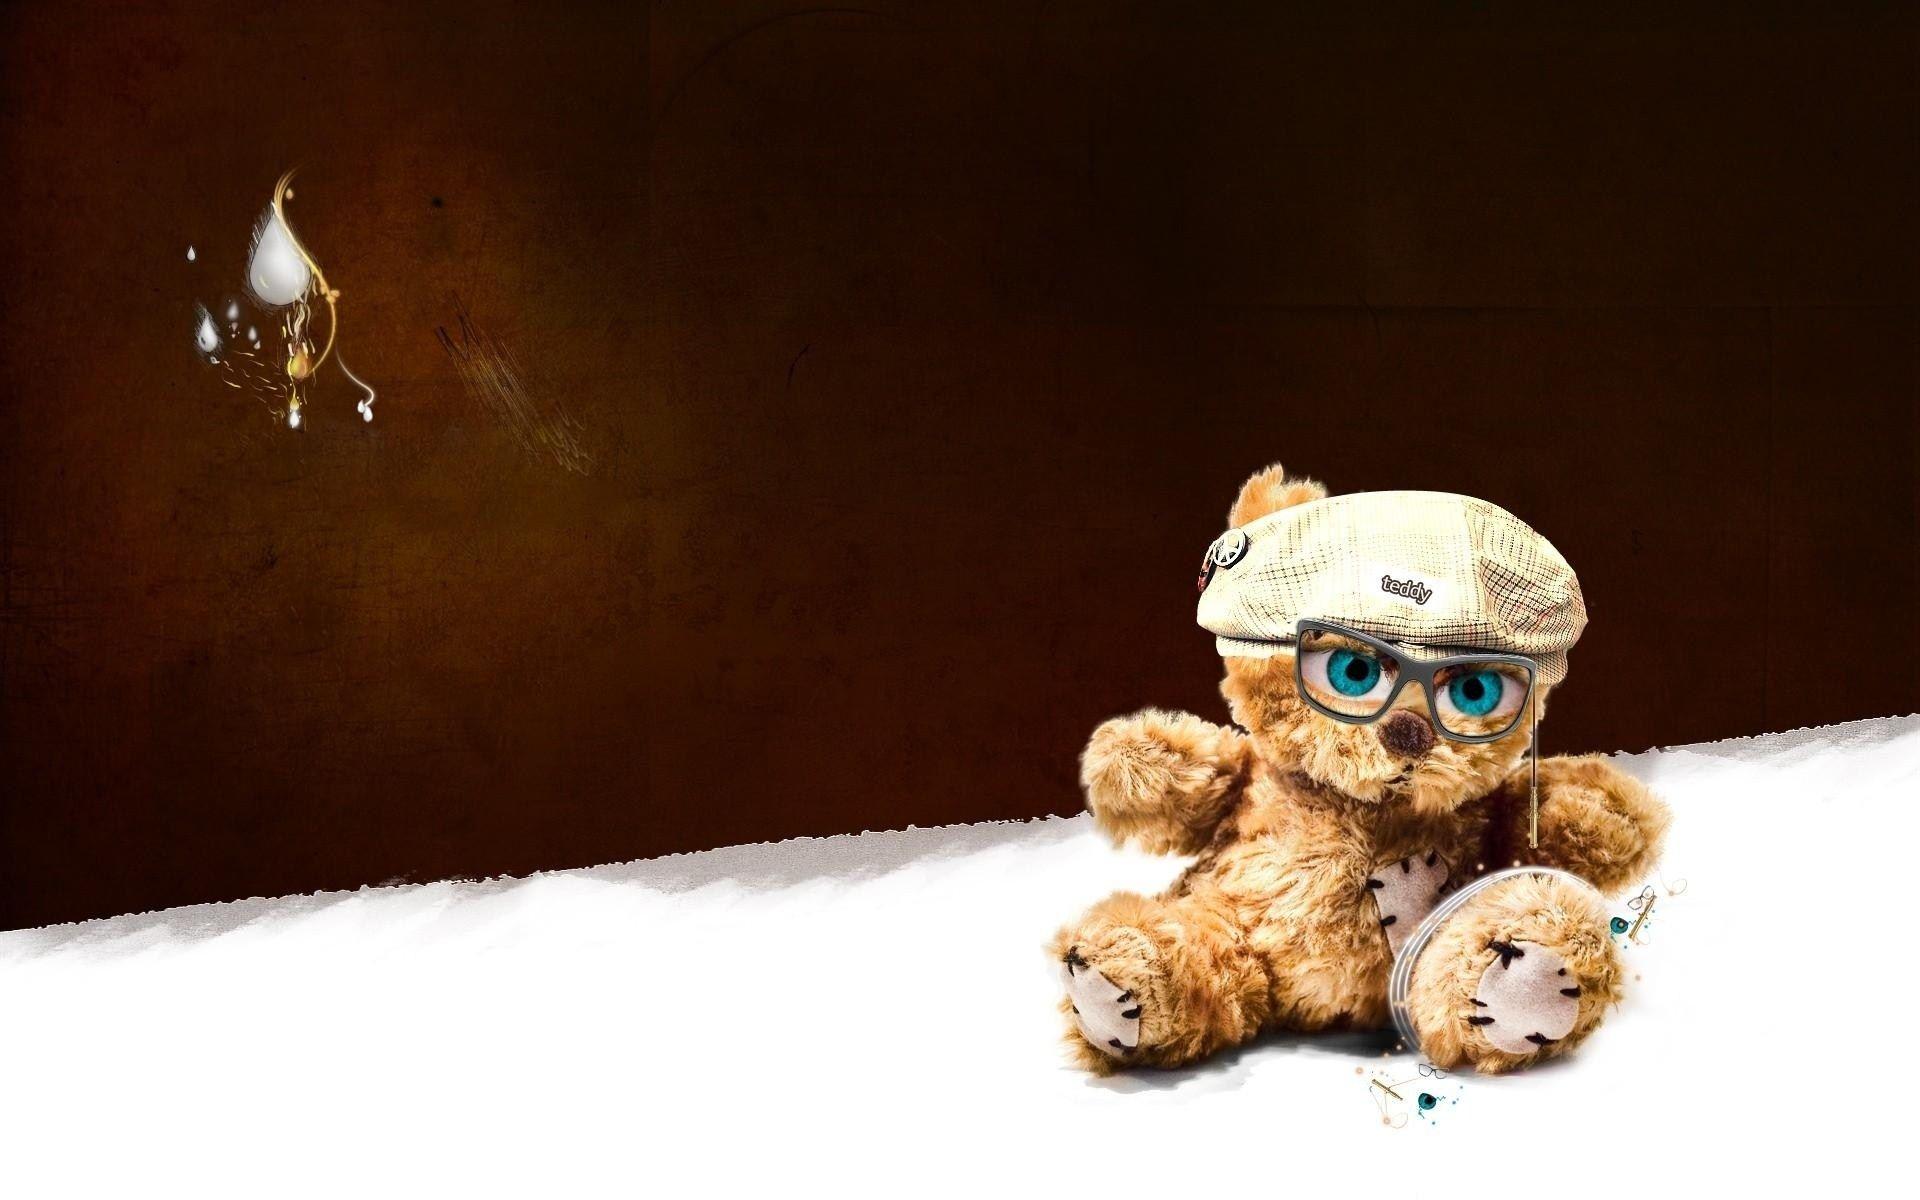 Cute Teddy bear wallpaper for happy Teddy day 2015